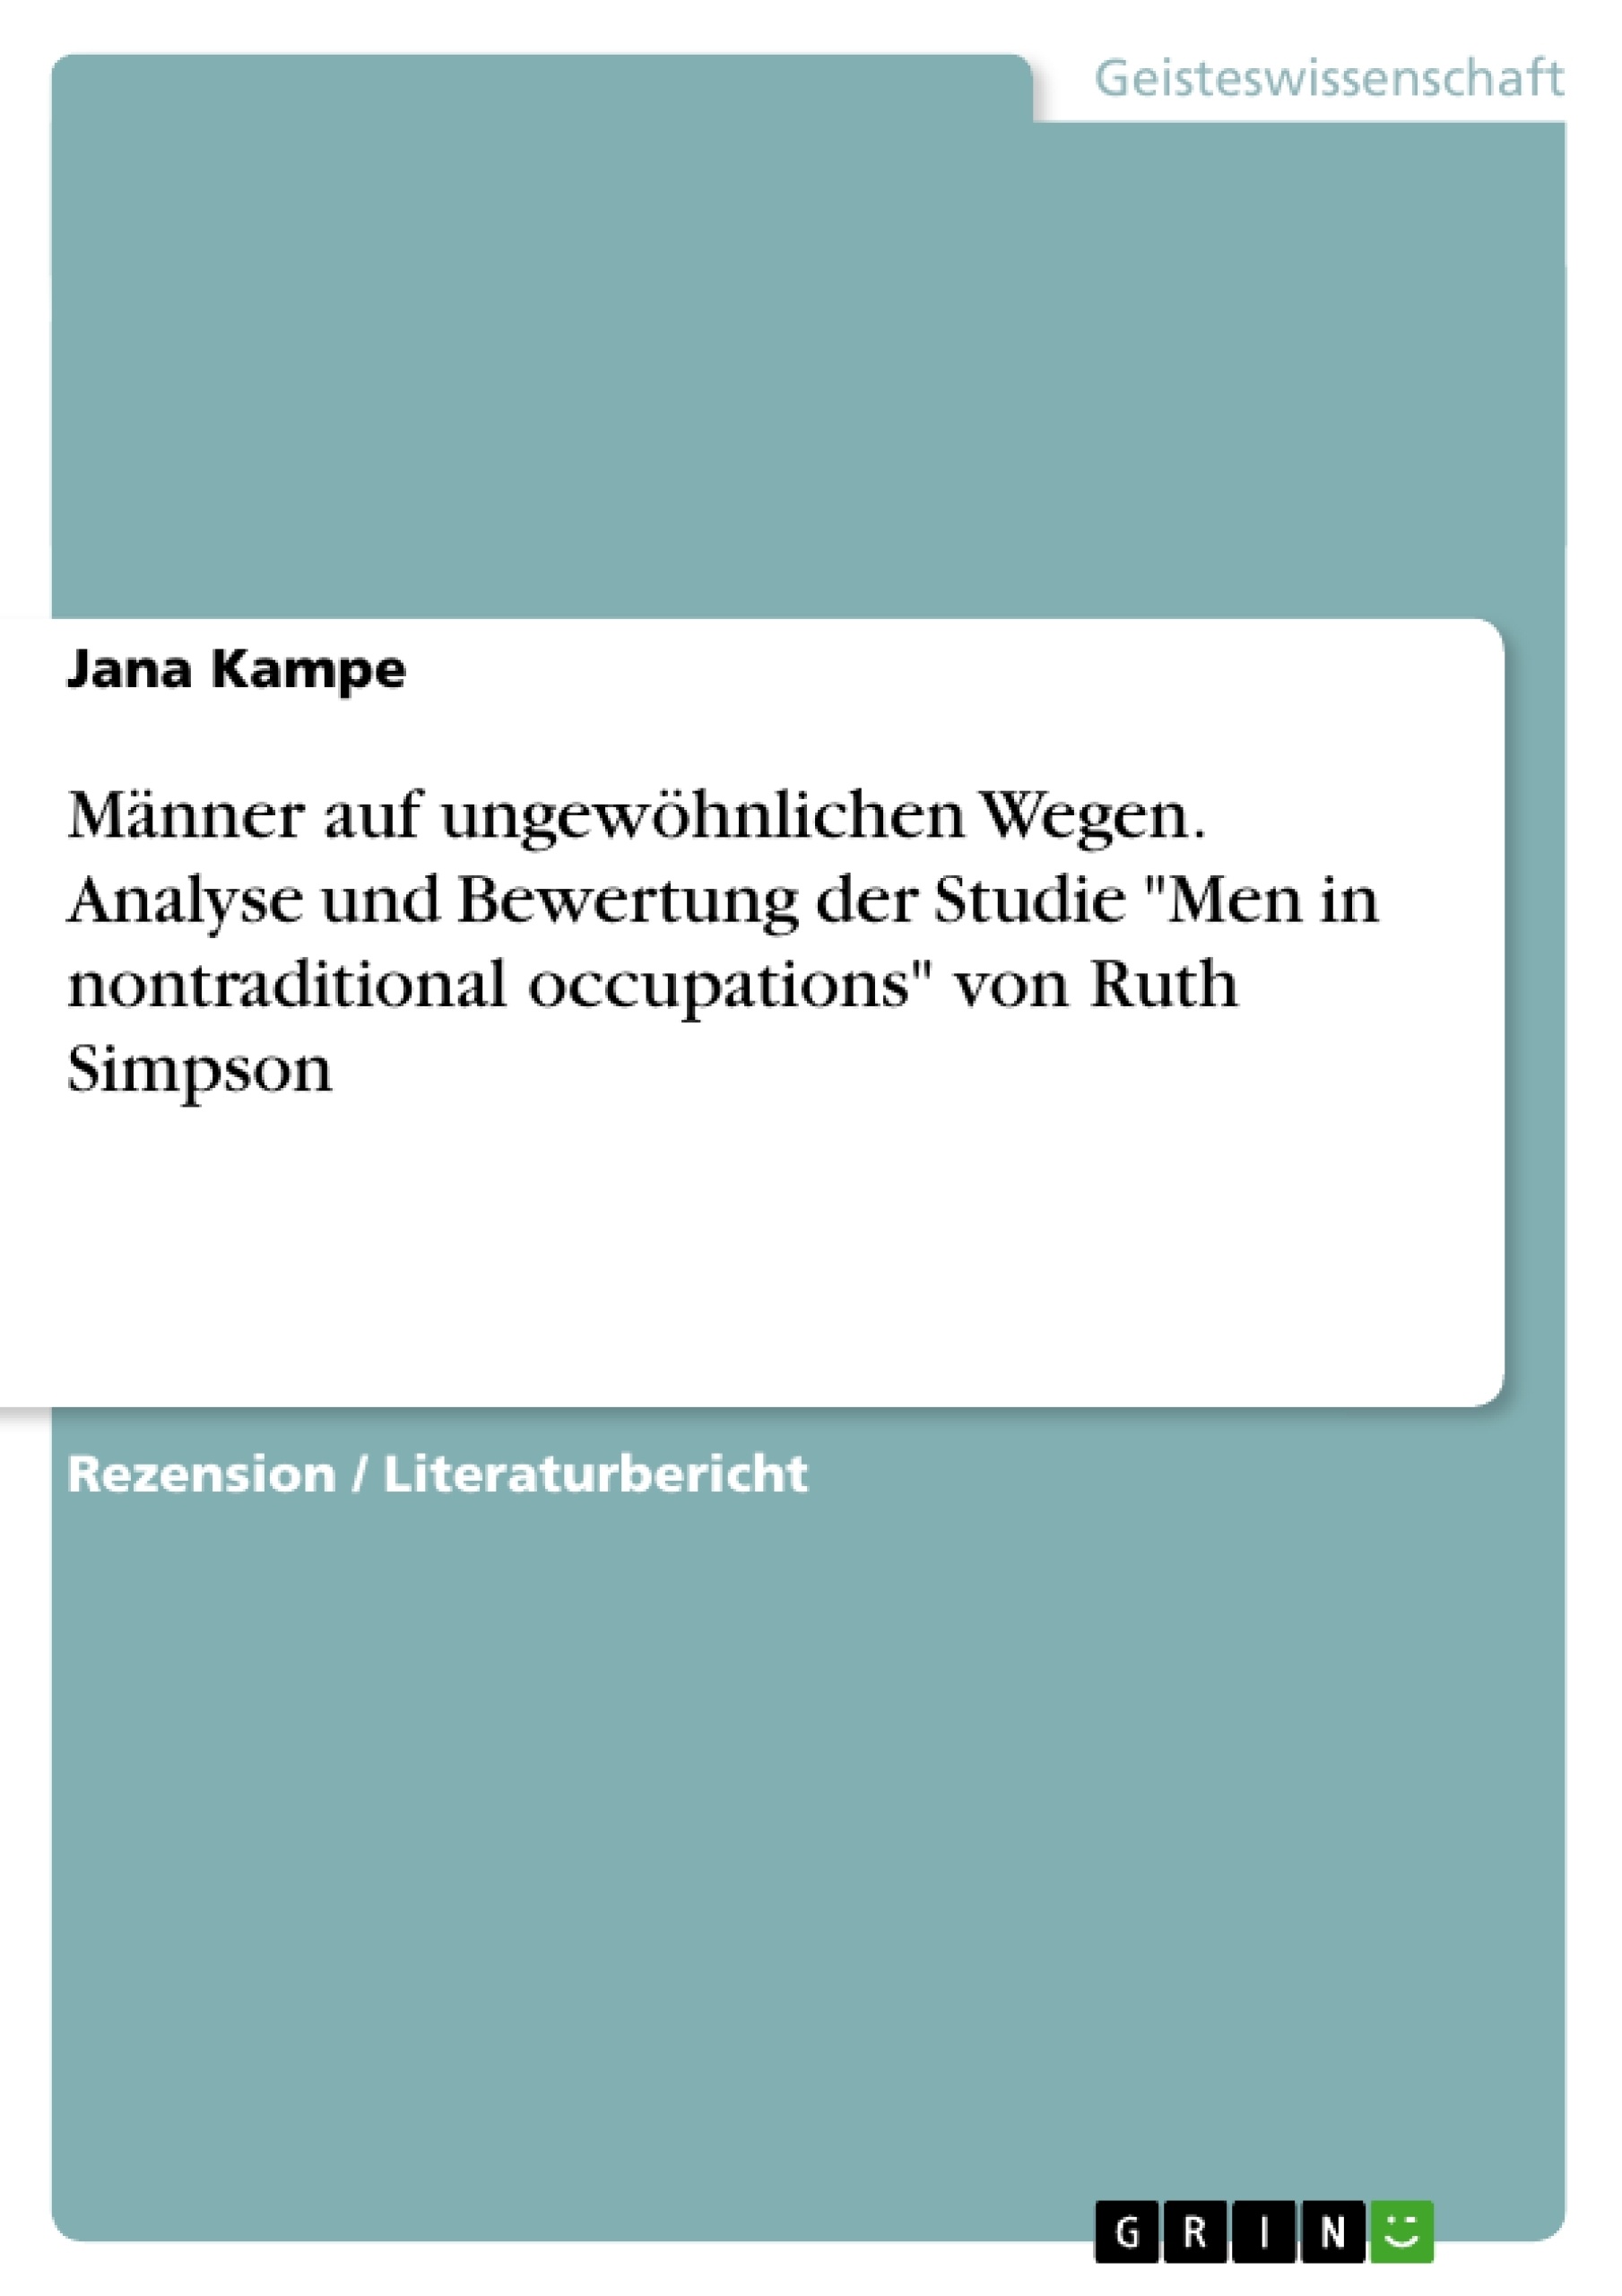 Titel: Männer auf ungewöhnlichen Wegen. Analyse und Bewertung der Studie "Men in nontraditional occupations" von Ruth Simpson